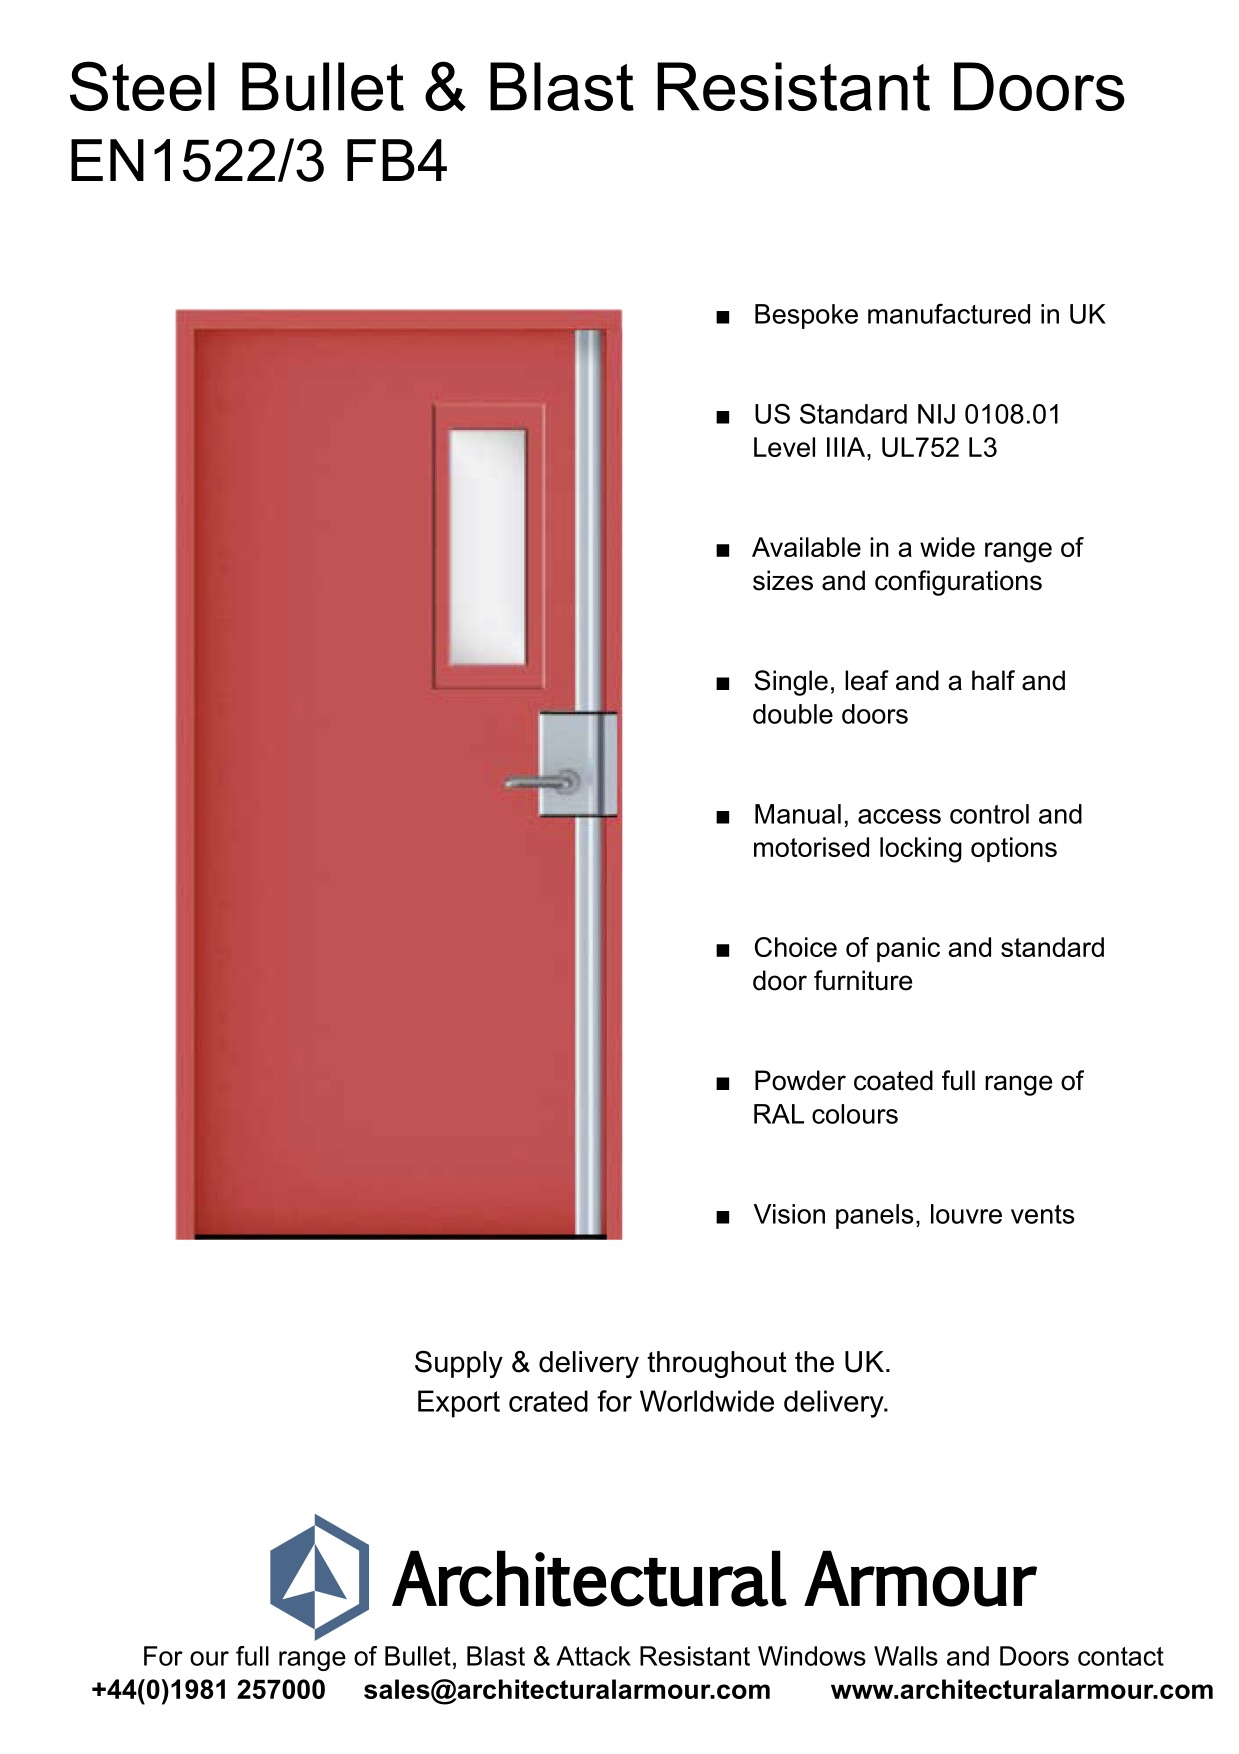 EN1522-3-FB4-Single-Slim-Vision-Panel-Blast-and-Bullet-Resistant-Steel-Door